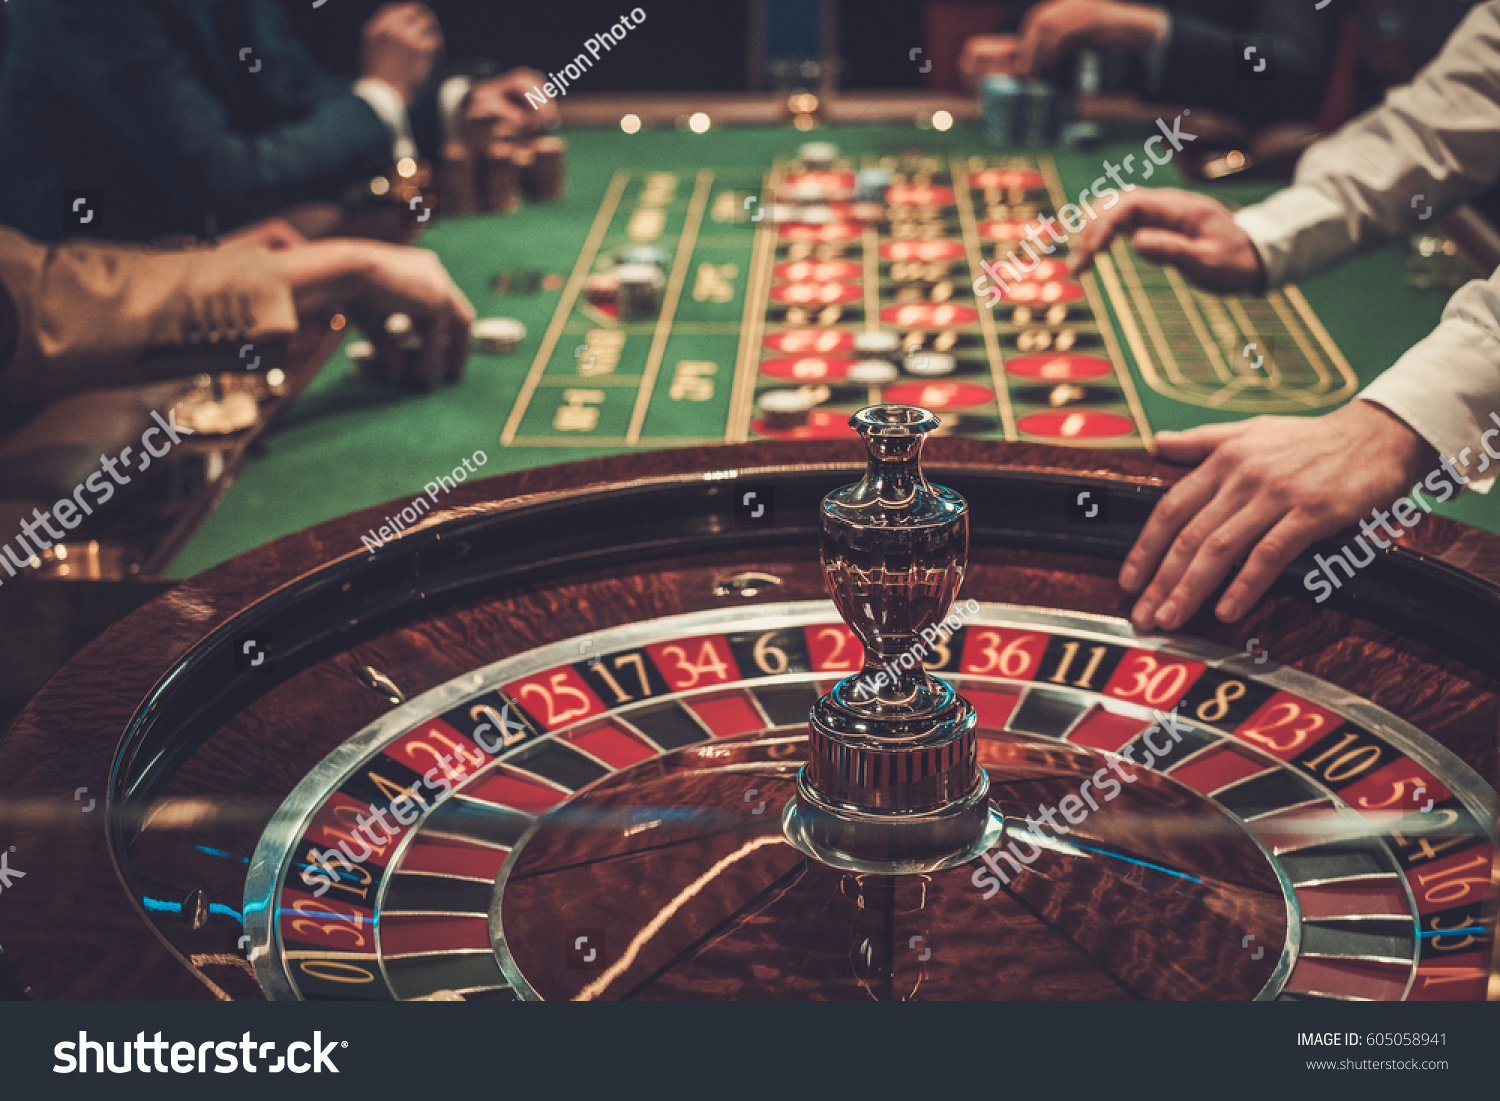 3 Gründe, warum Facebook die schlechteste Option für casinos mit echtgeld ist